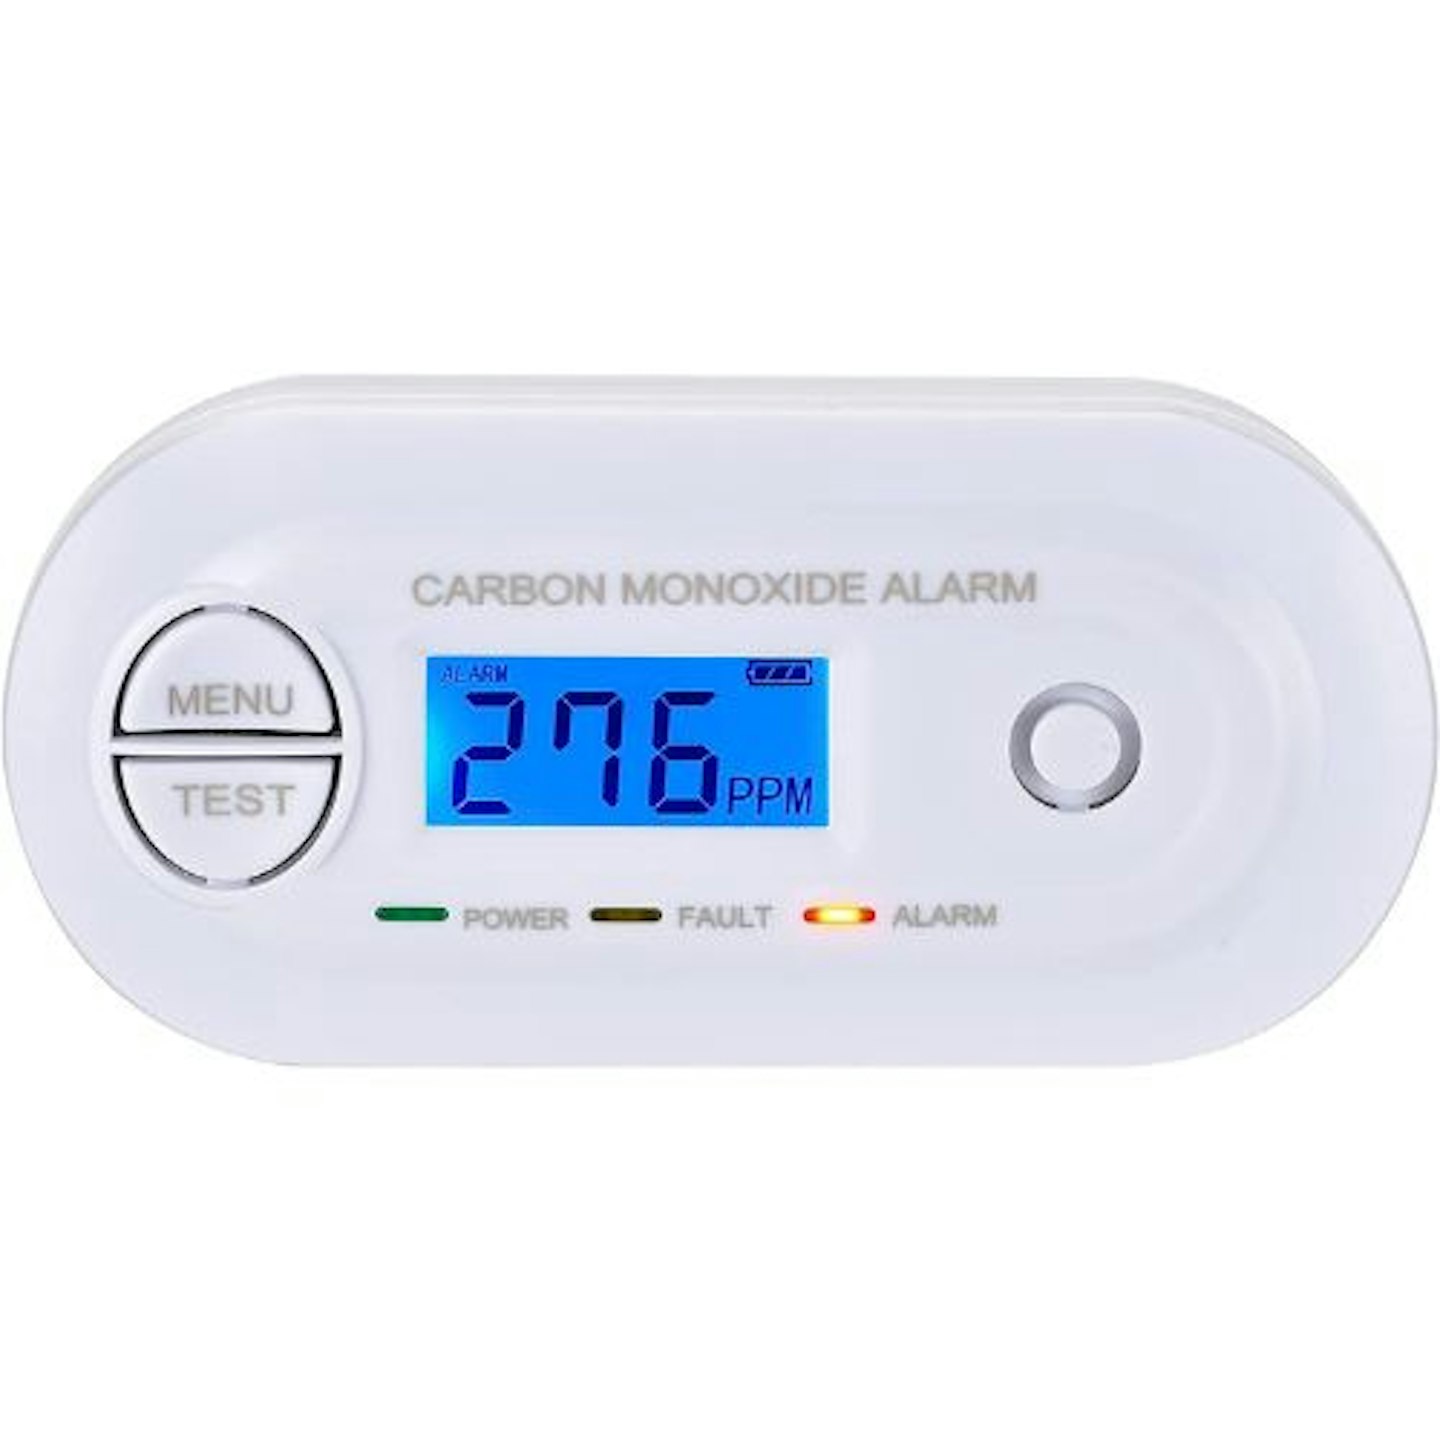 Scondaor Carbon Monoxide Alarm Detector